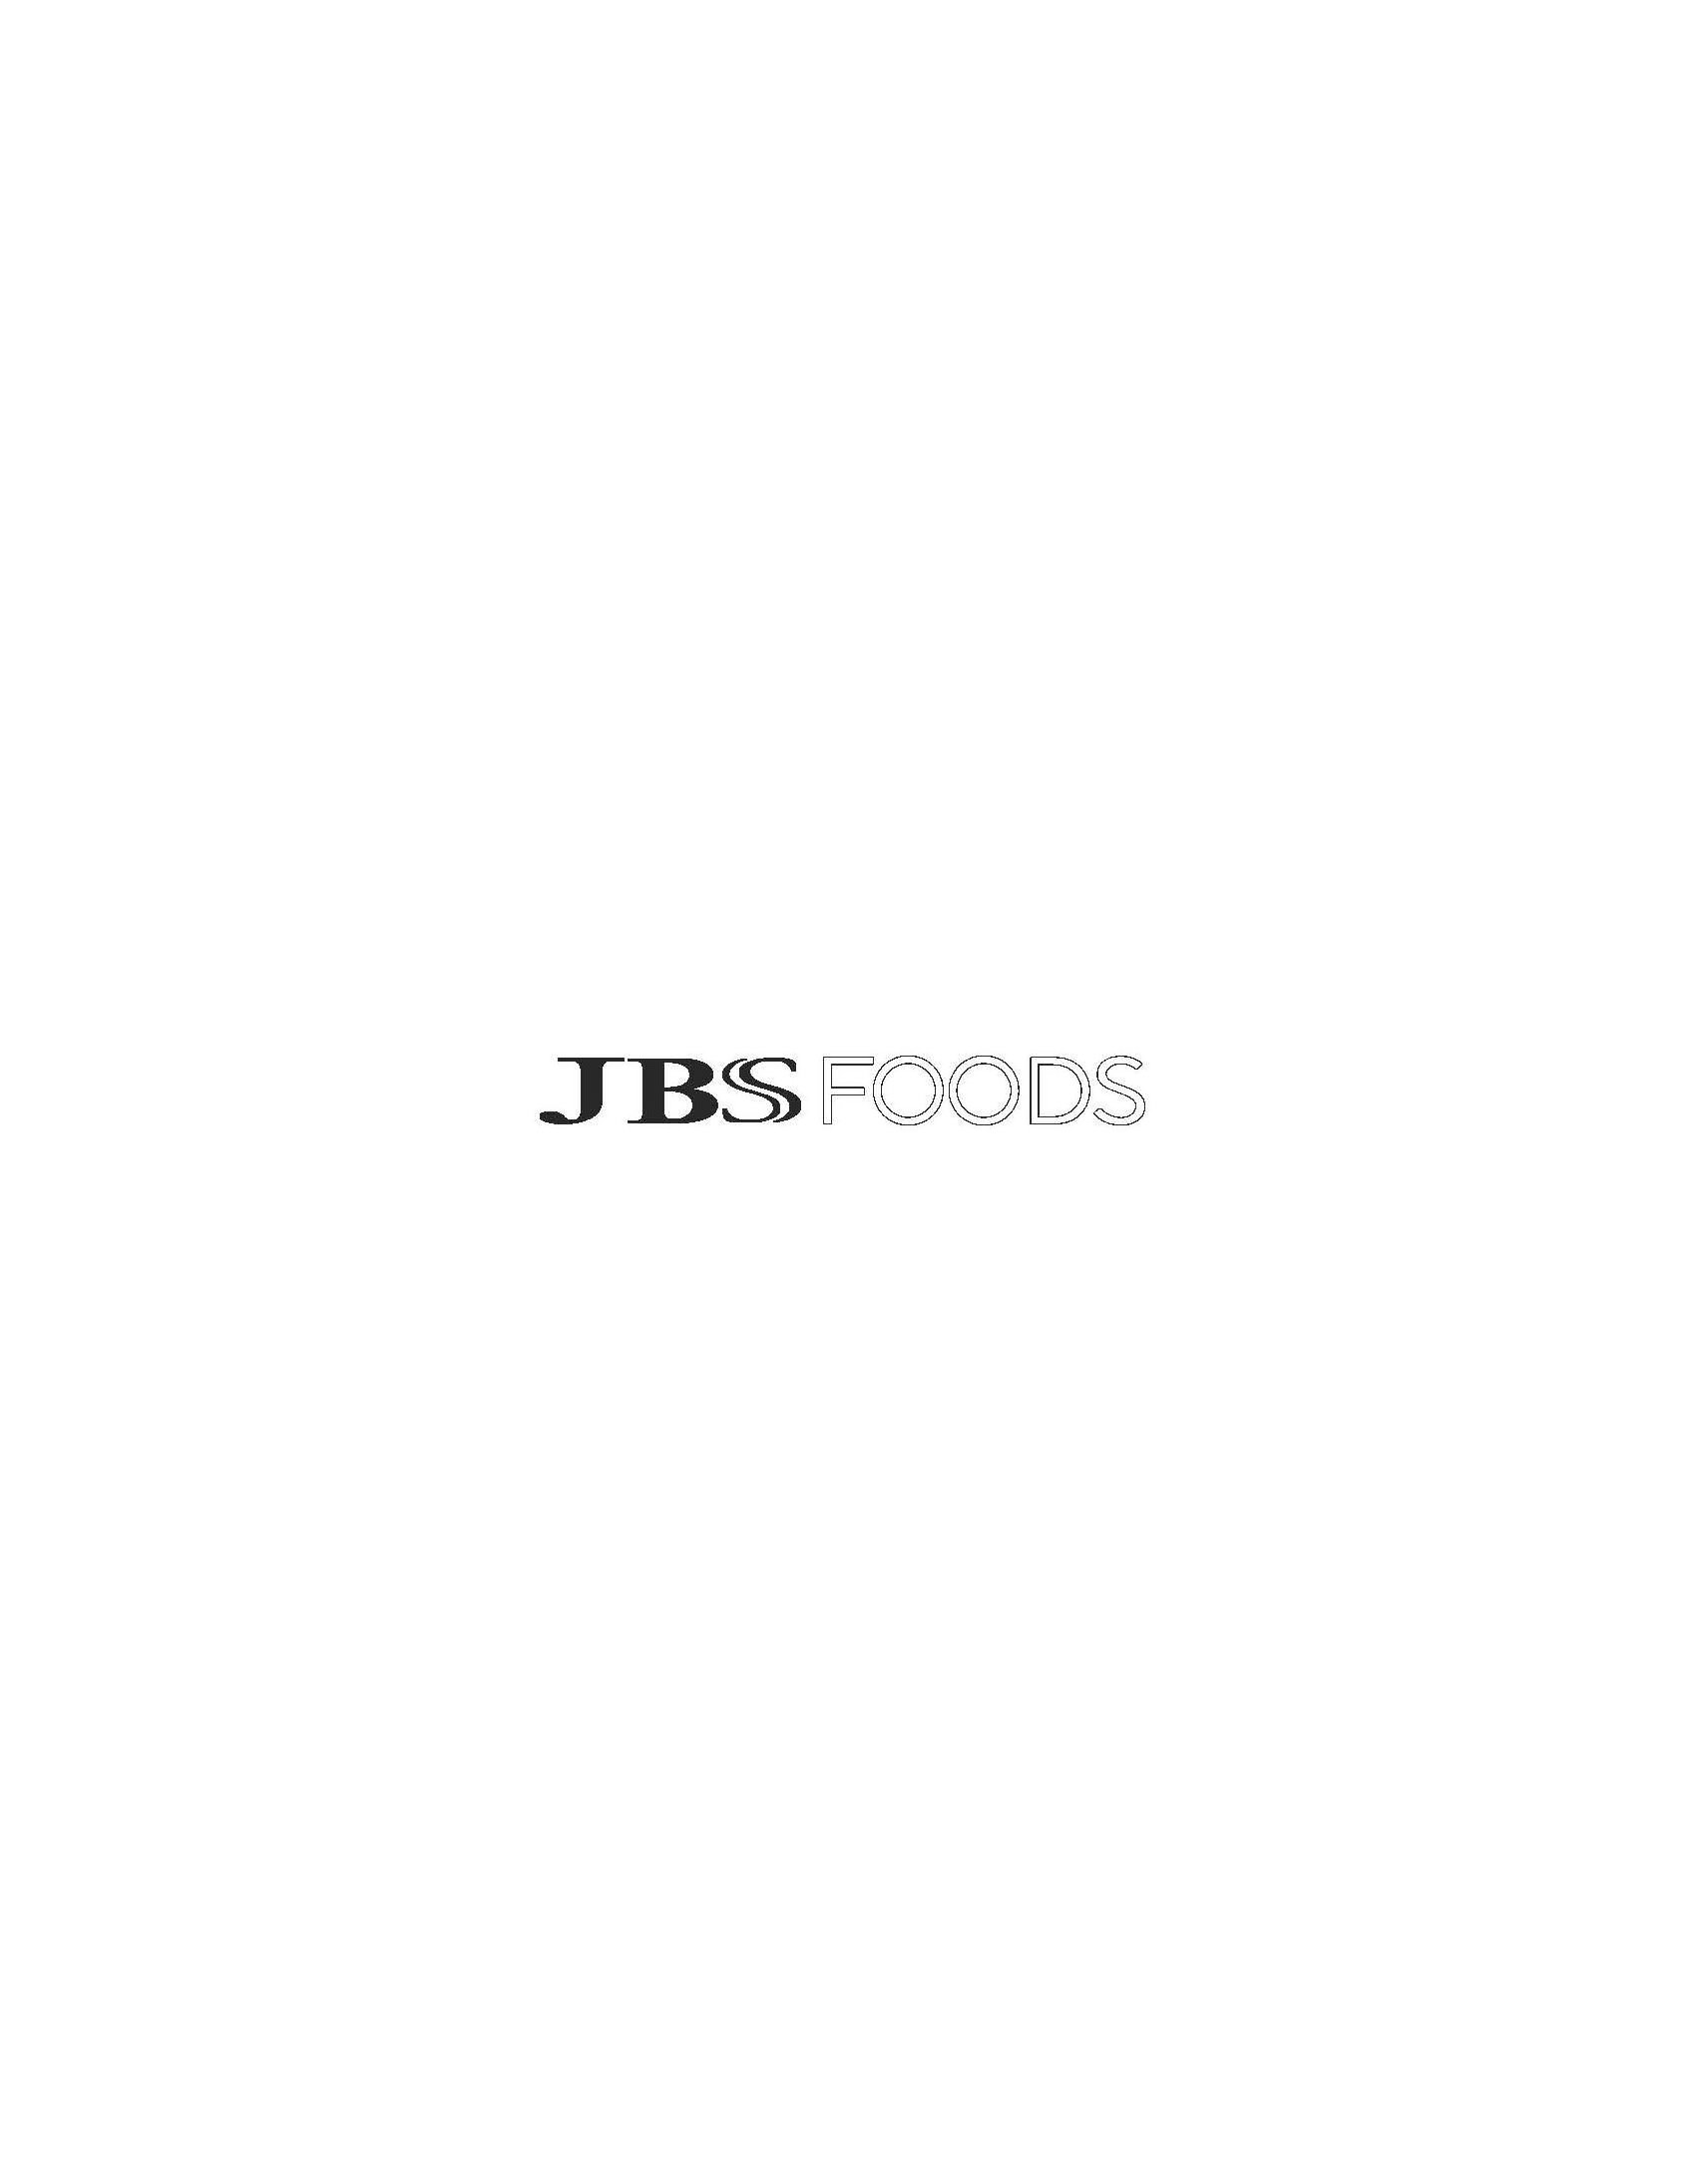  JBS FOODS